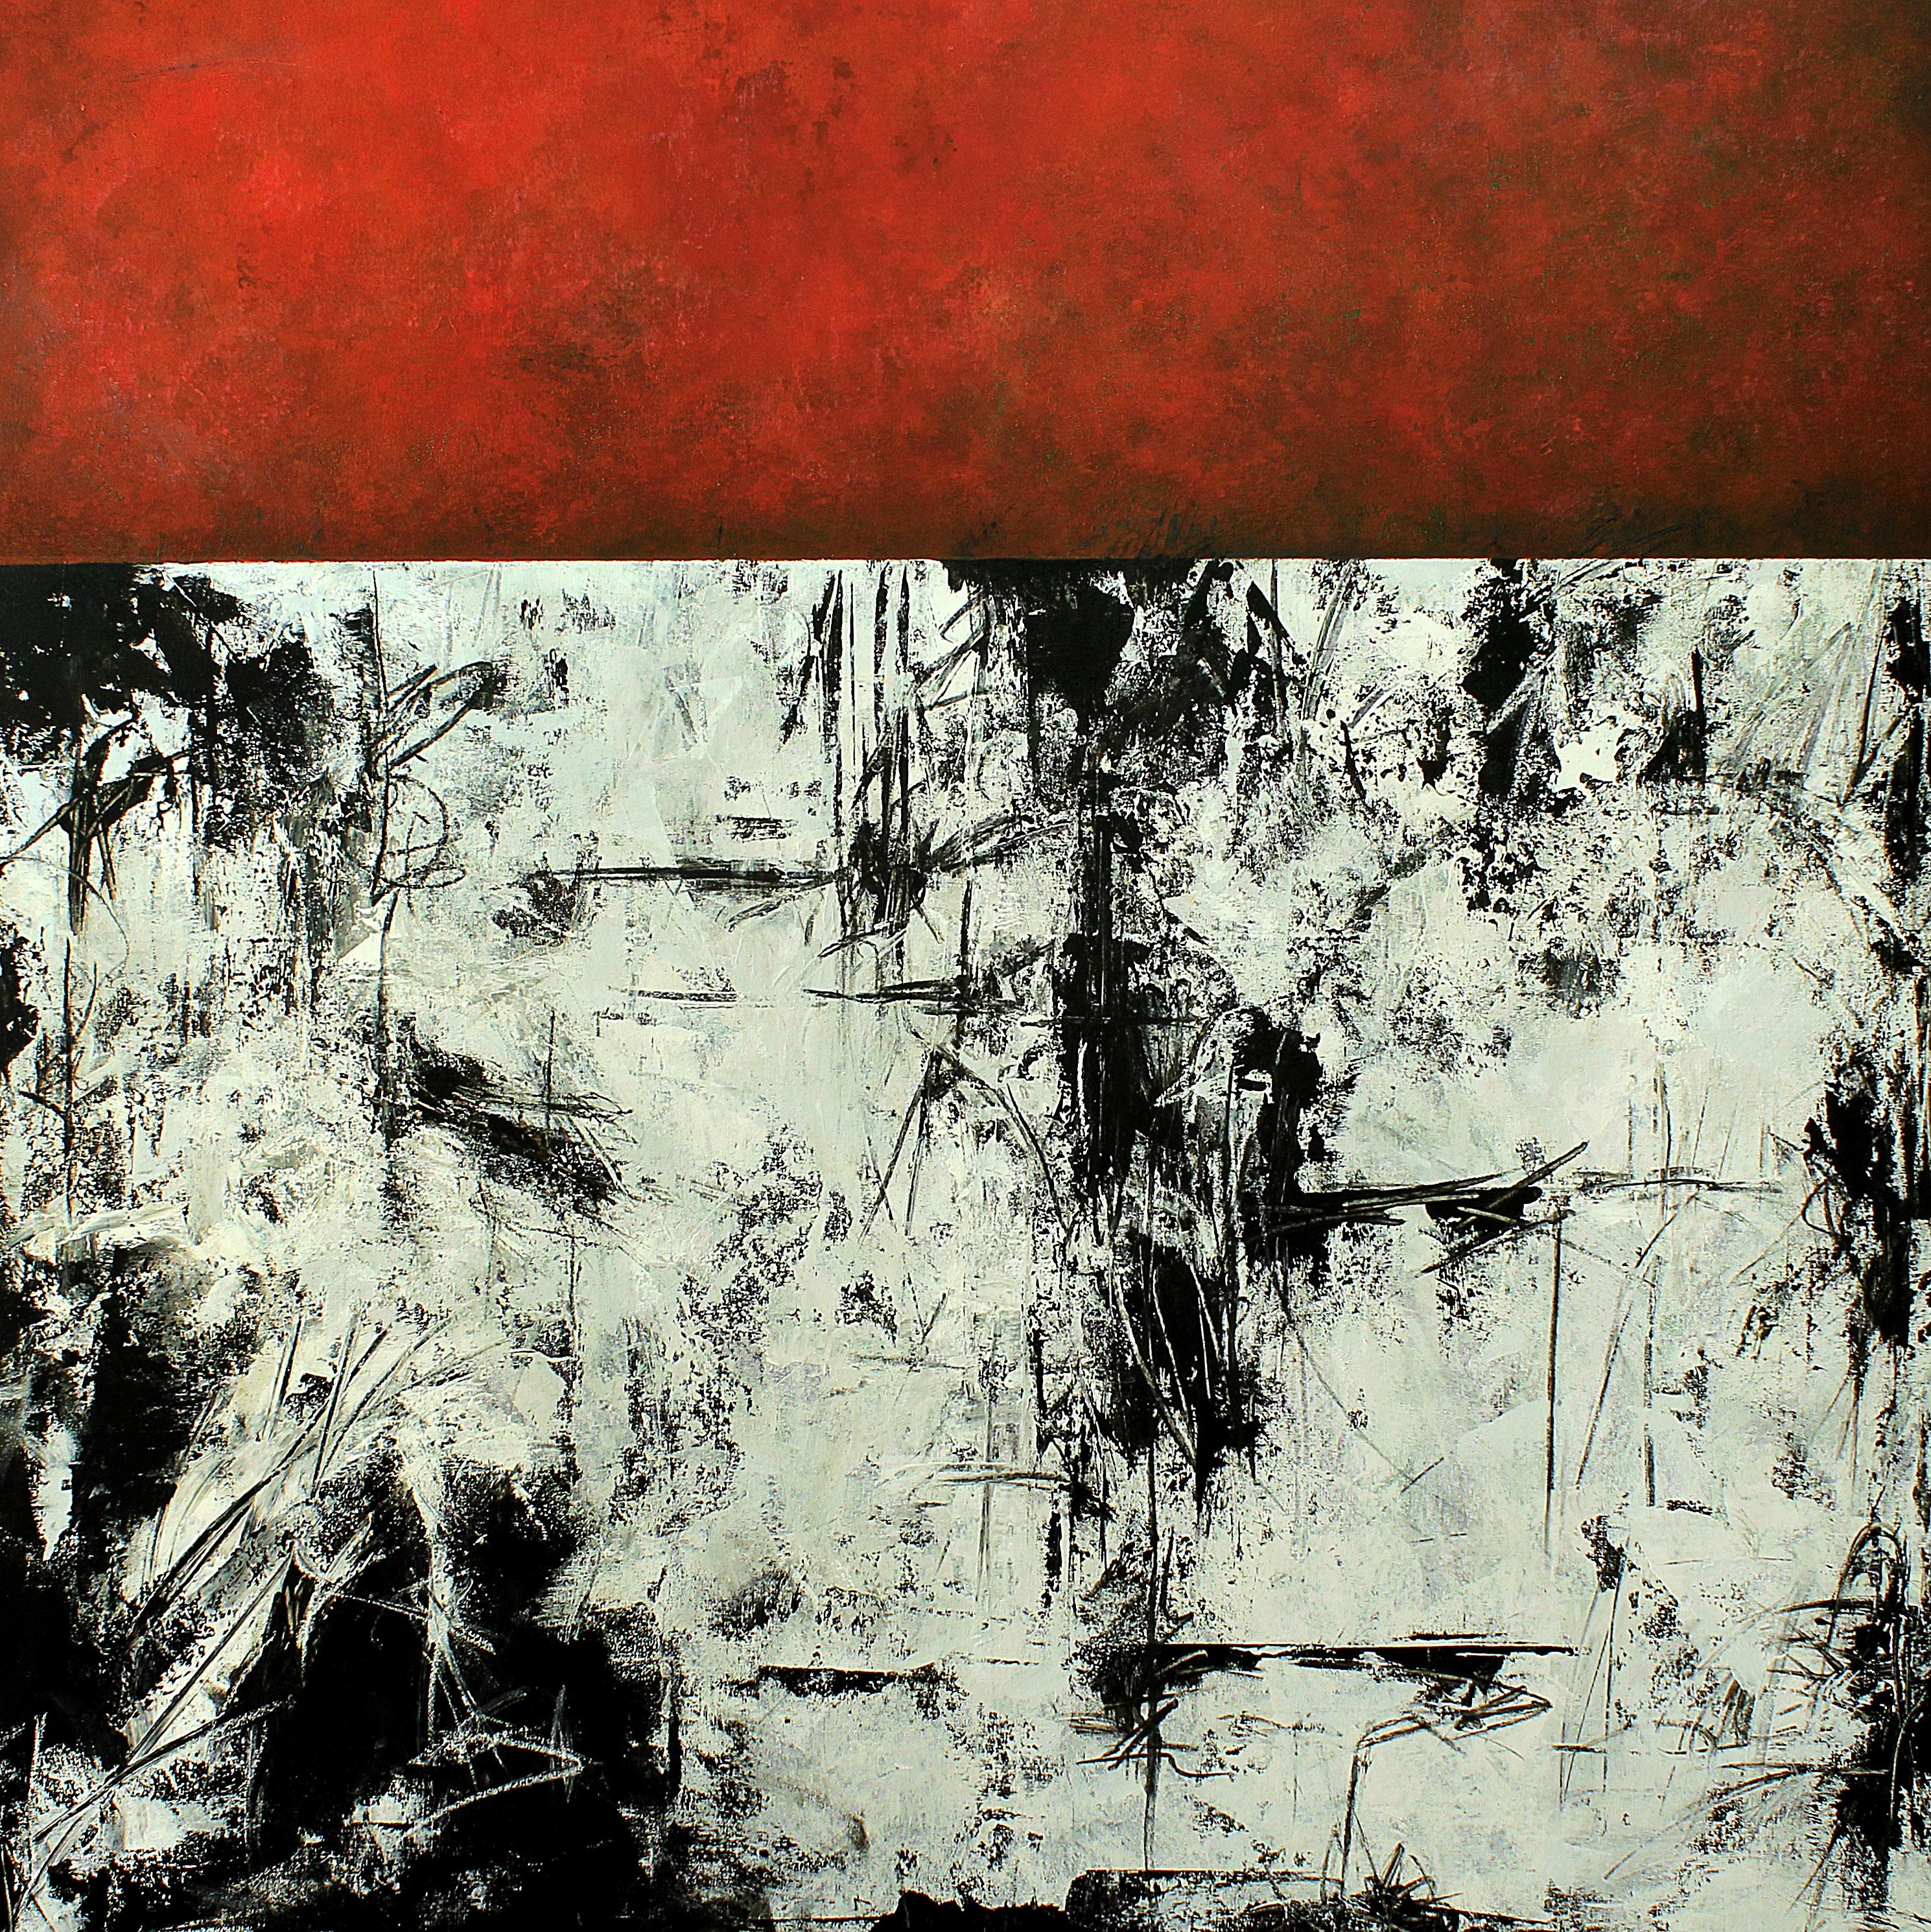 "Emotional Juxtaposition Red" ist ein auffälliges abstraktes Gemälde von Peisy Ting, das die Aufmerksamkeit des Betrachters durch seine kühne Verwendung von Farbe und Textur fesselt. Die Leinwand wird von leuchtenden Rottönen dominiert, die